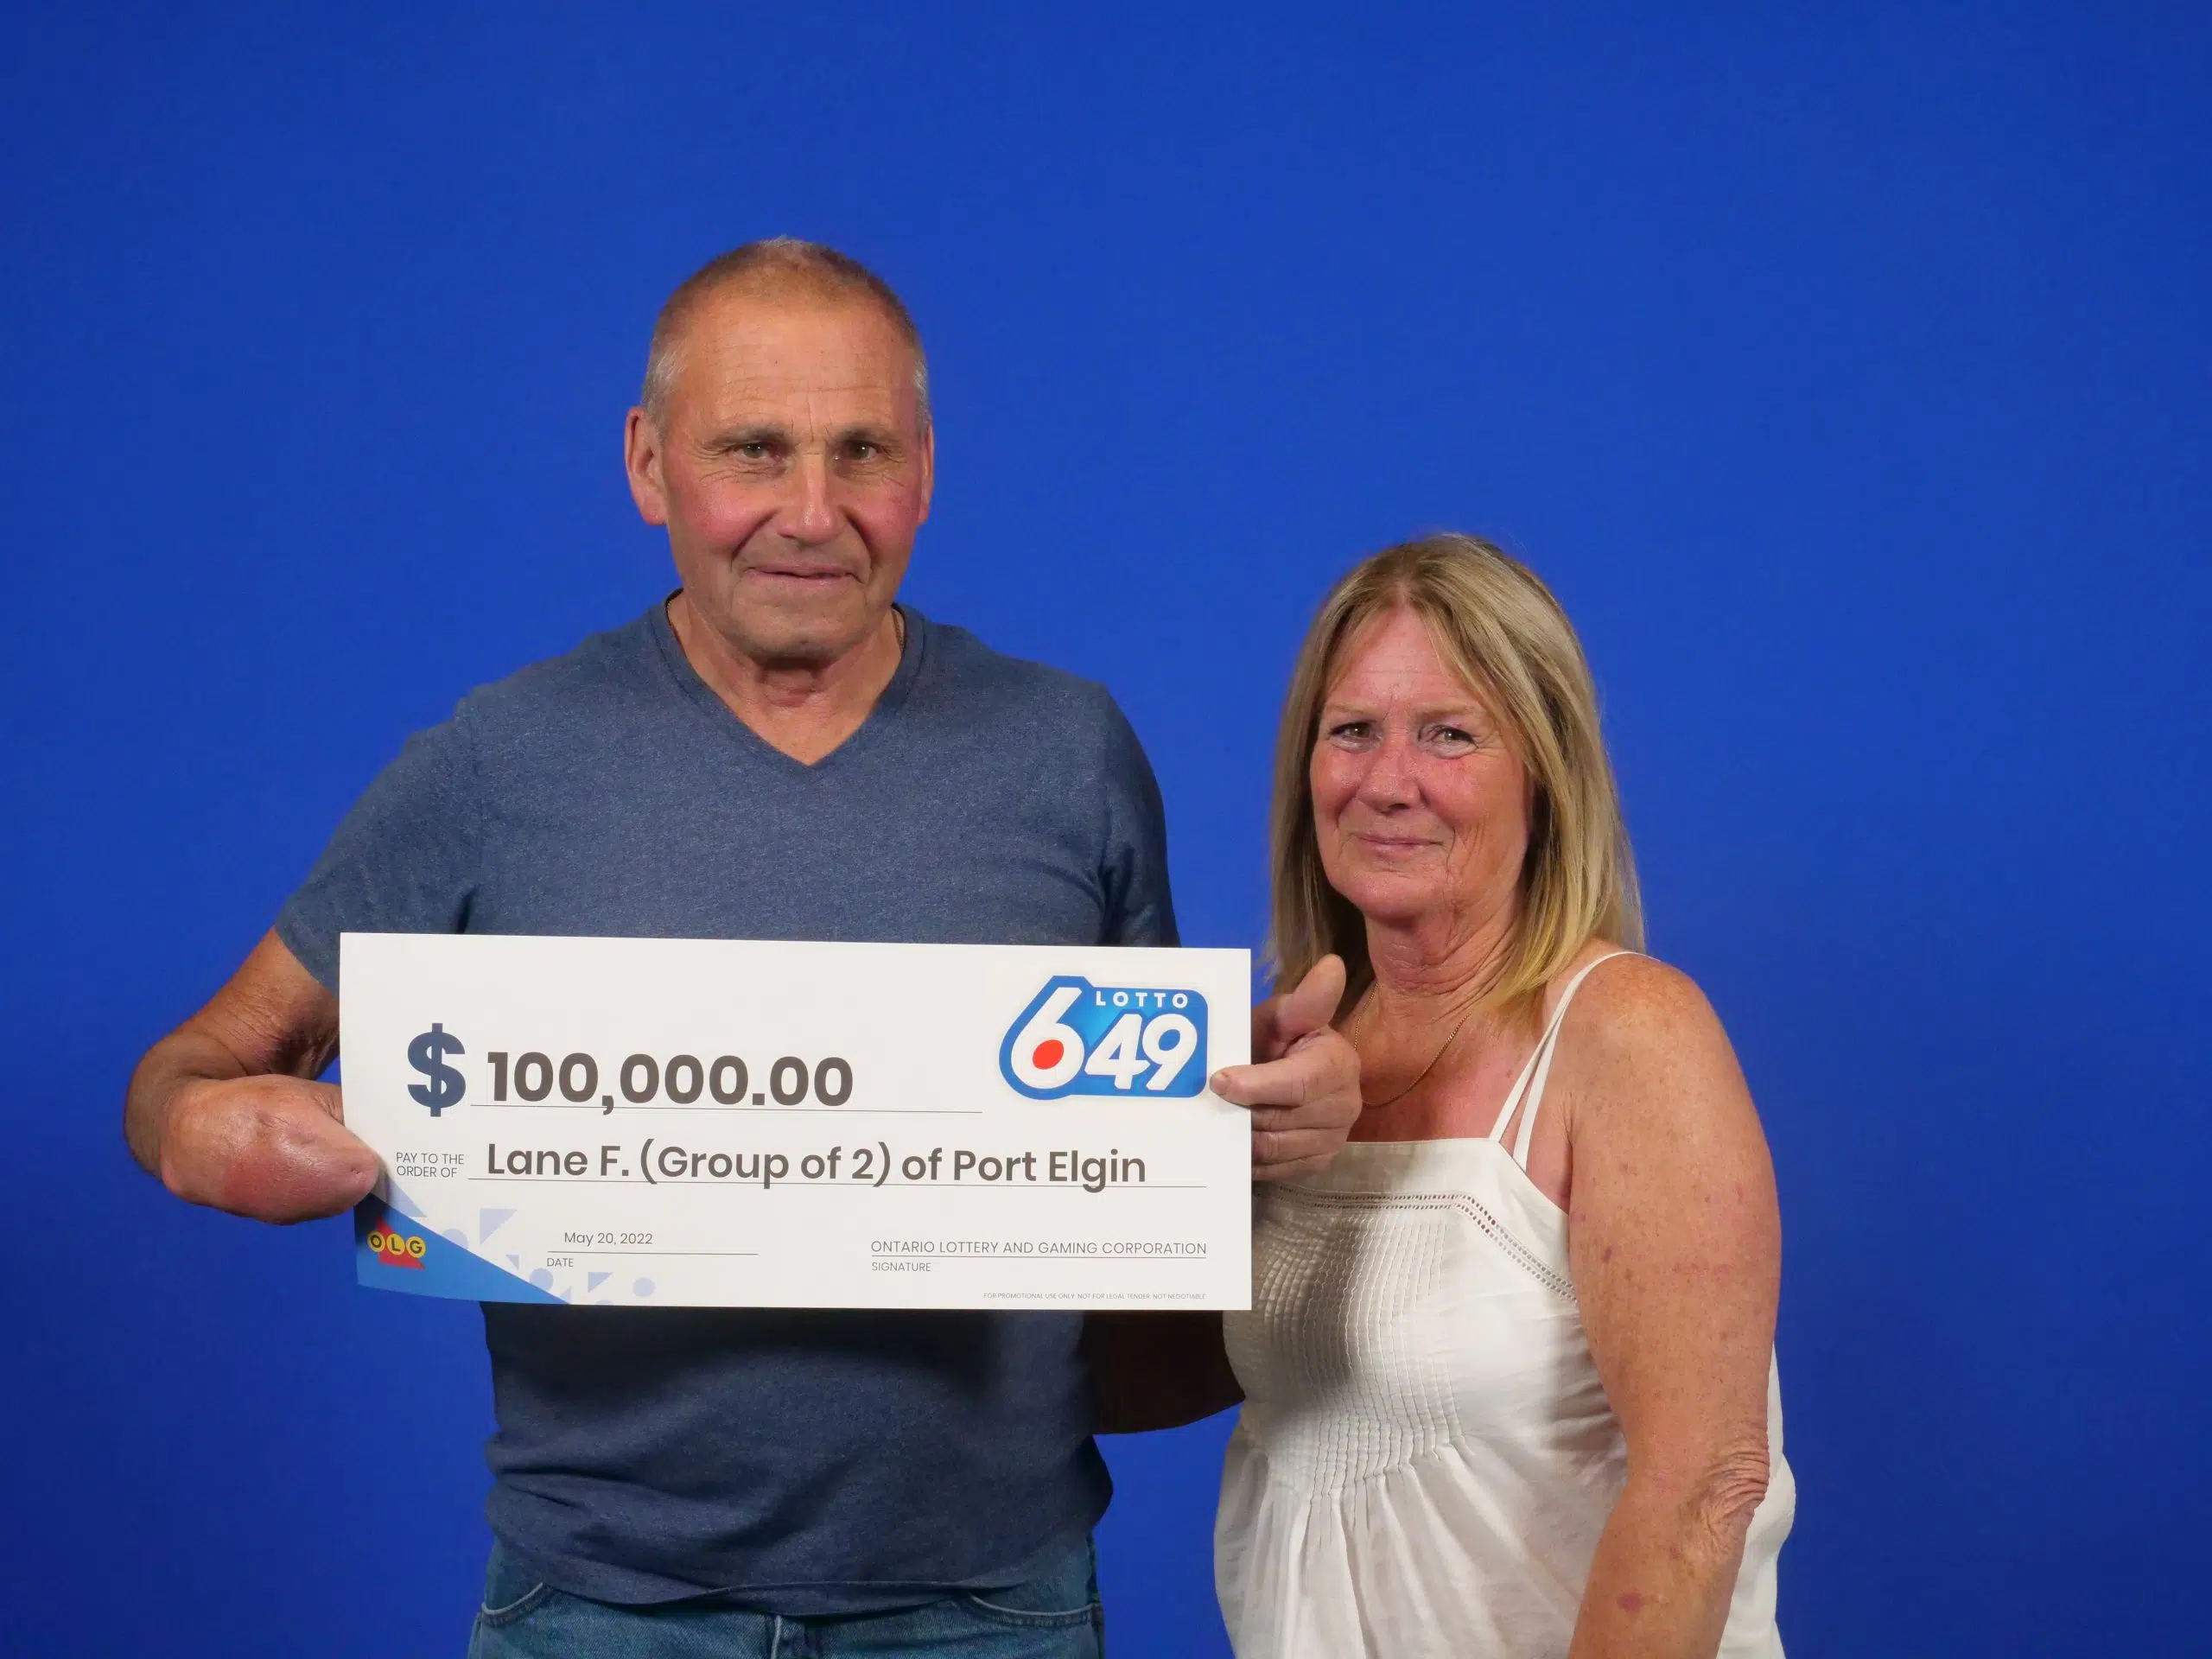 Port Elgin Pair Wins $100,000